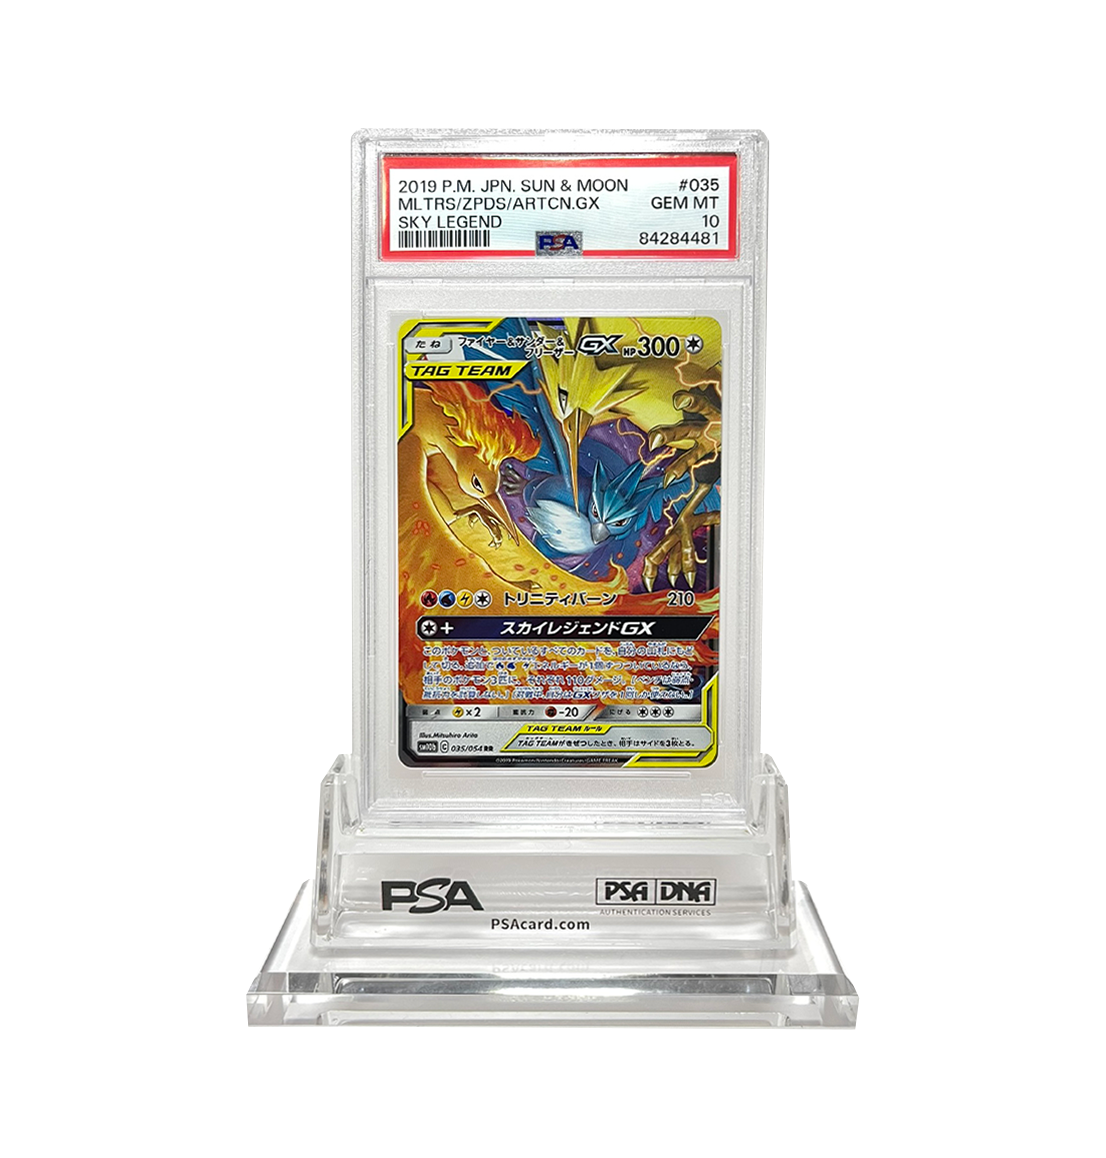 PSA 10 Moltres Zapdos Articuno 035 SM10b Japanese Pokemon card